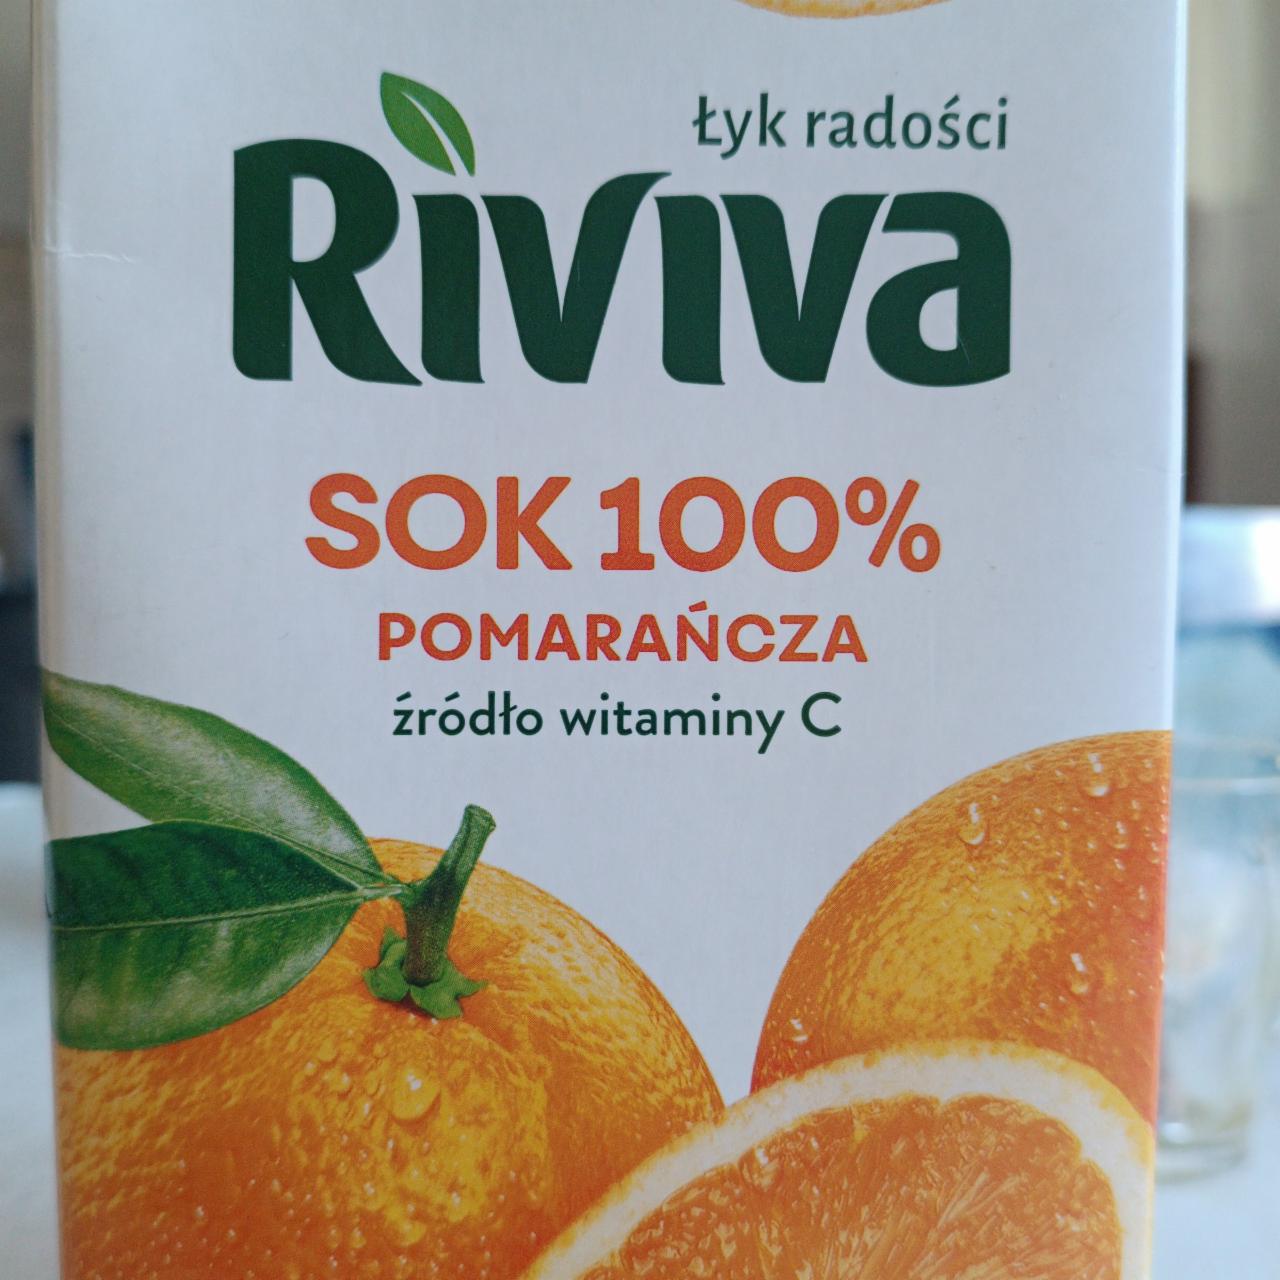 Zdjęcia - Sok 100% pomarańcza źródło witaminy C Riviva